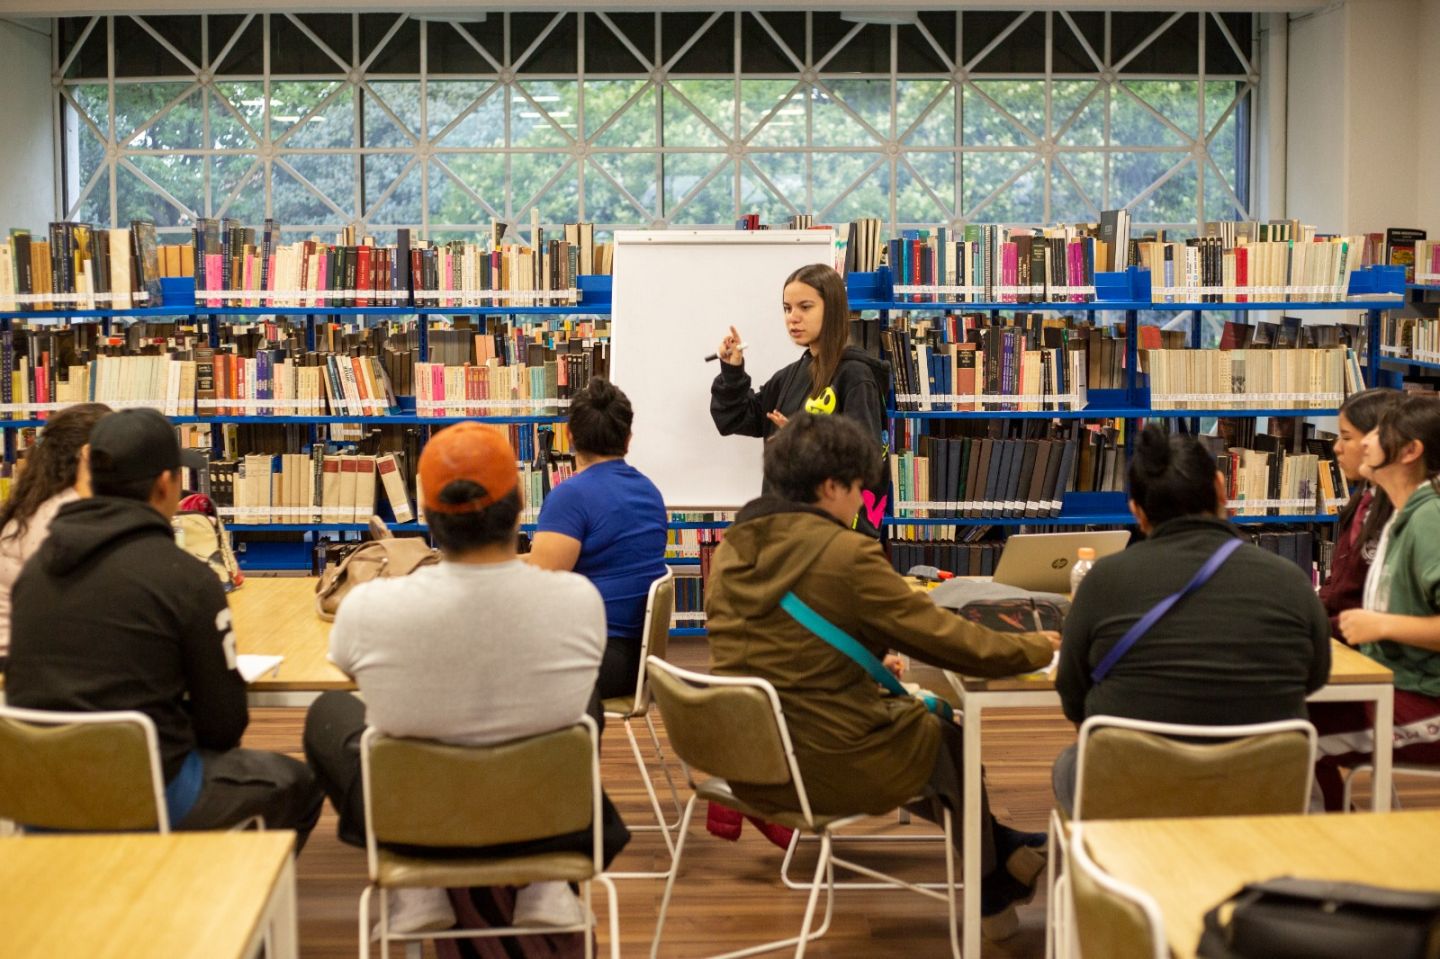 Ser políglota es gratis en la Biblioteca Pública ’Leona Vicario’